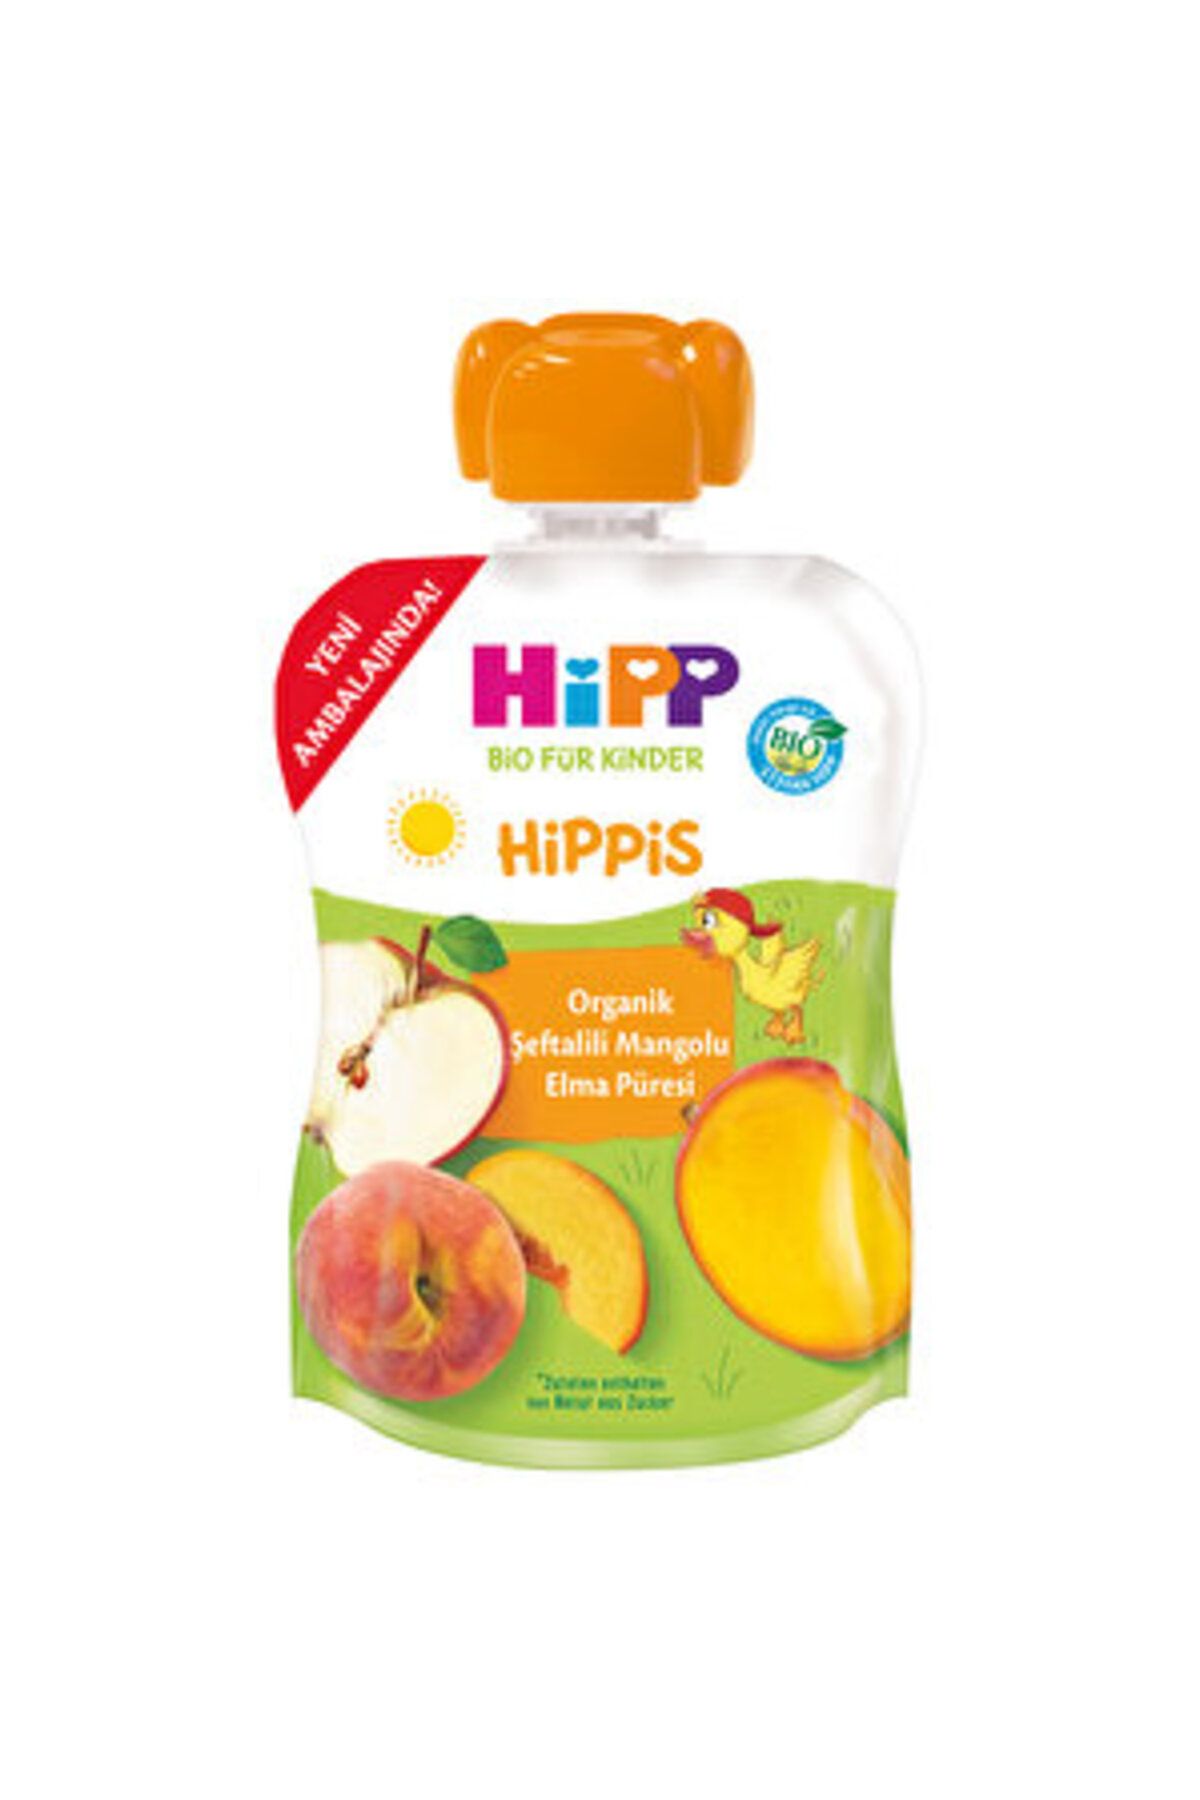 Hipp Organik Şeftalili Mangolu Elmalı Meyve Püresi 100 gr ( 1 ADET )